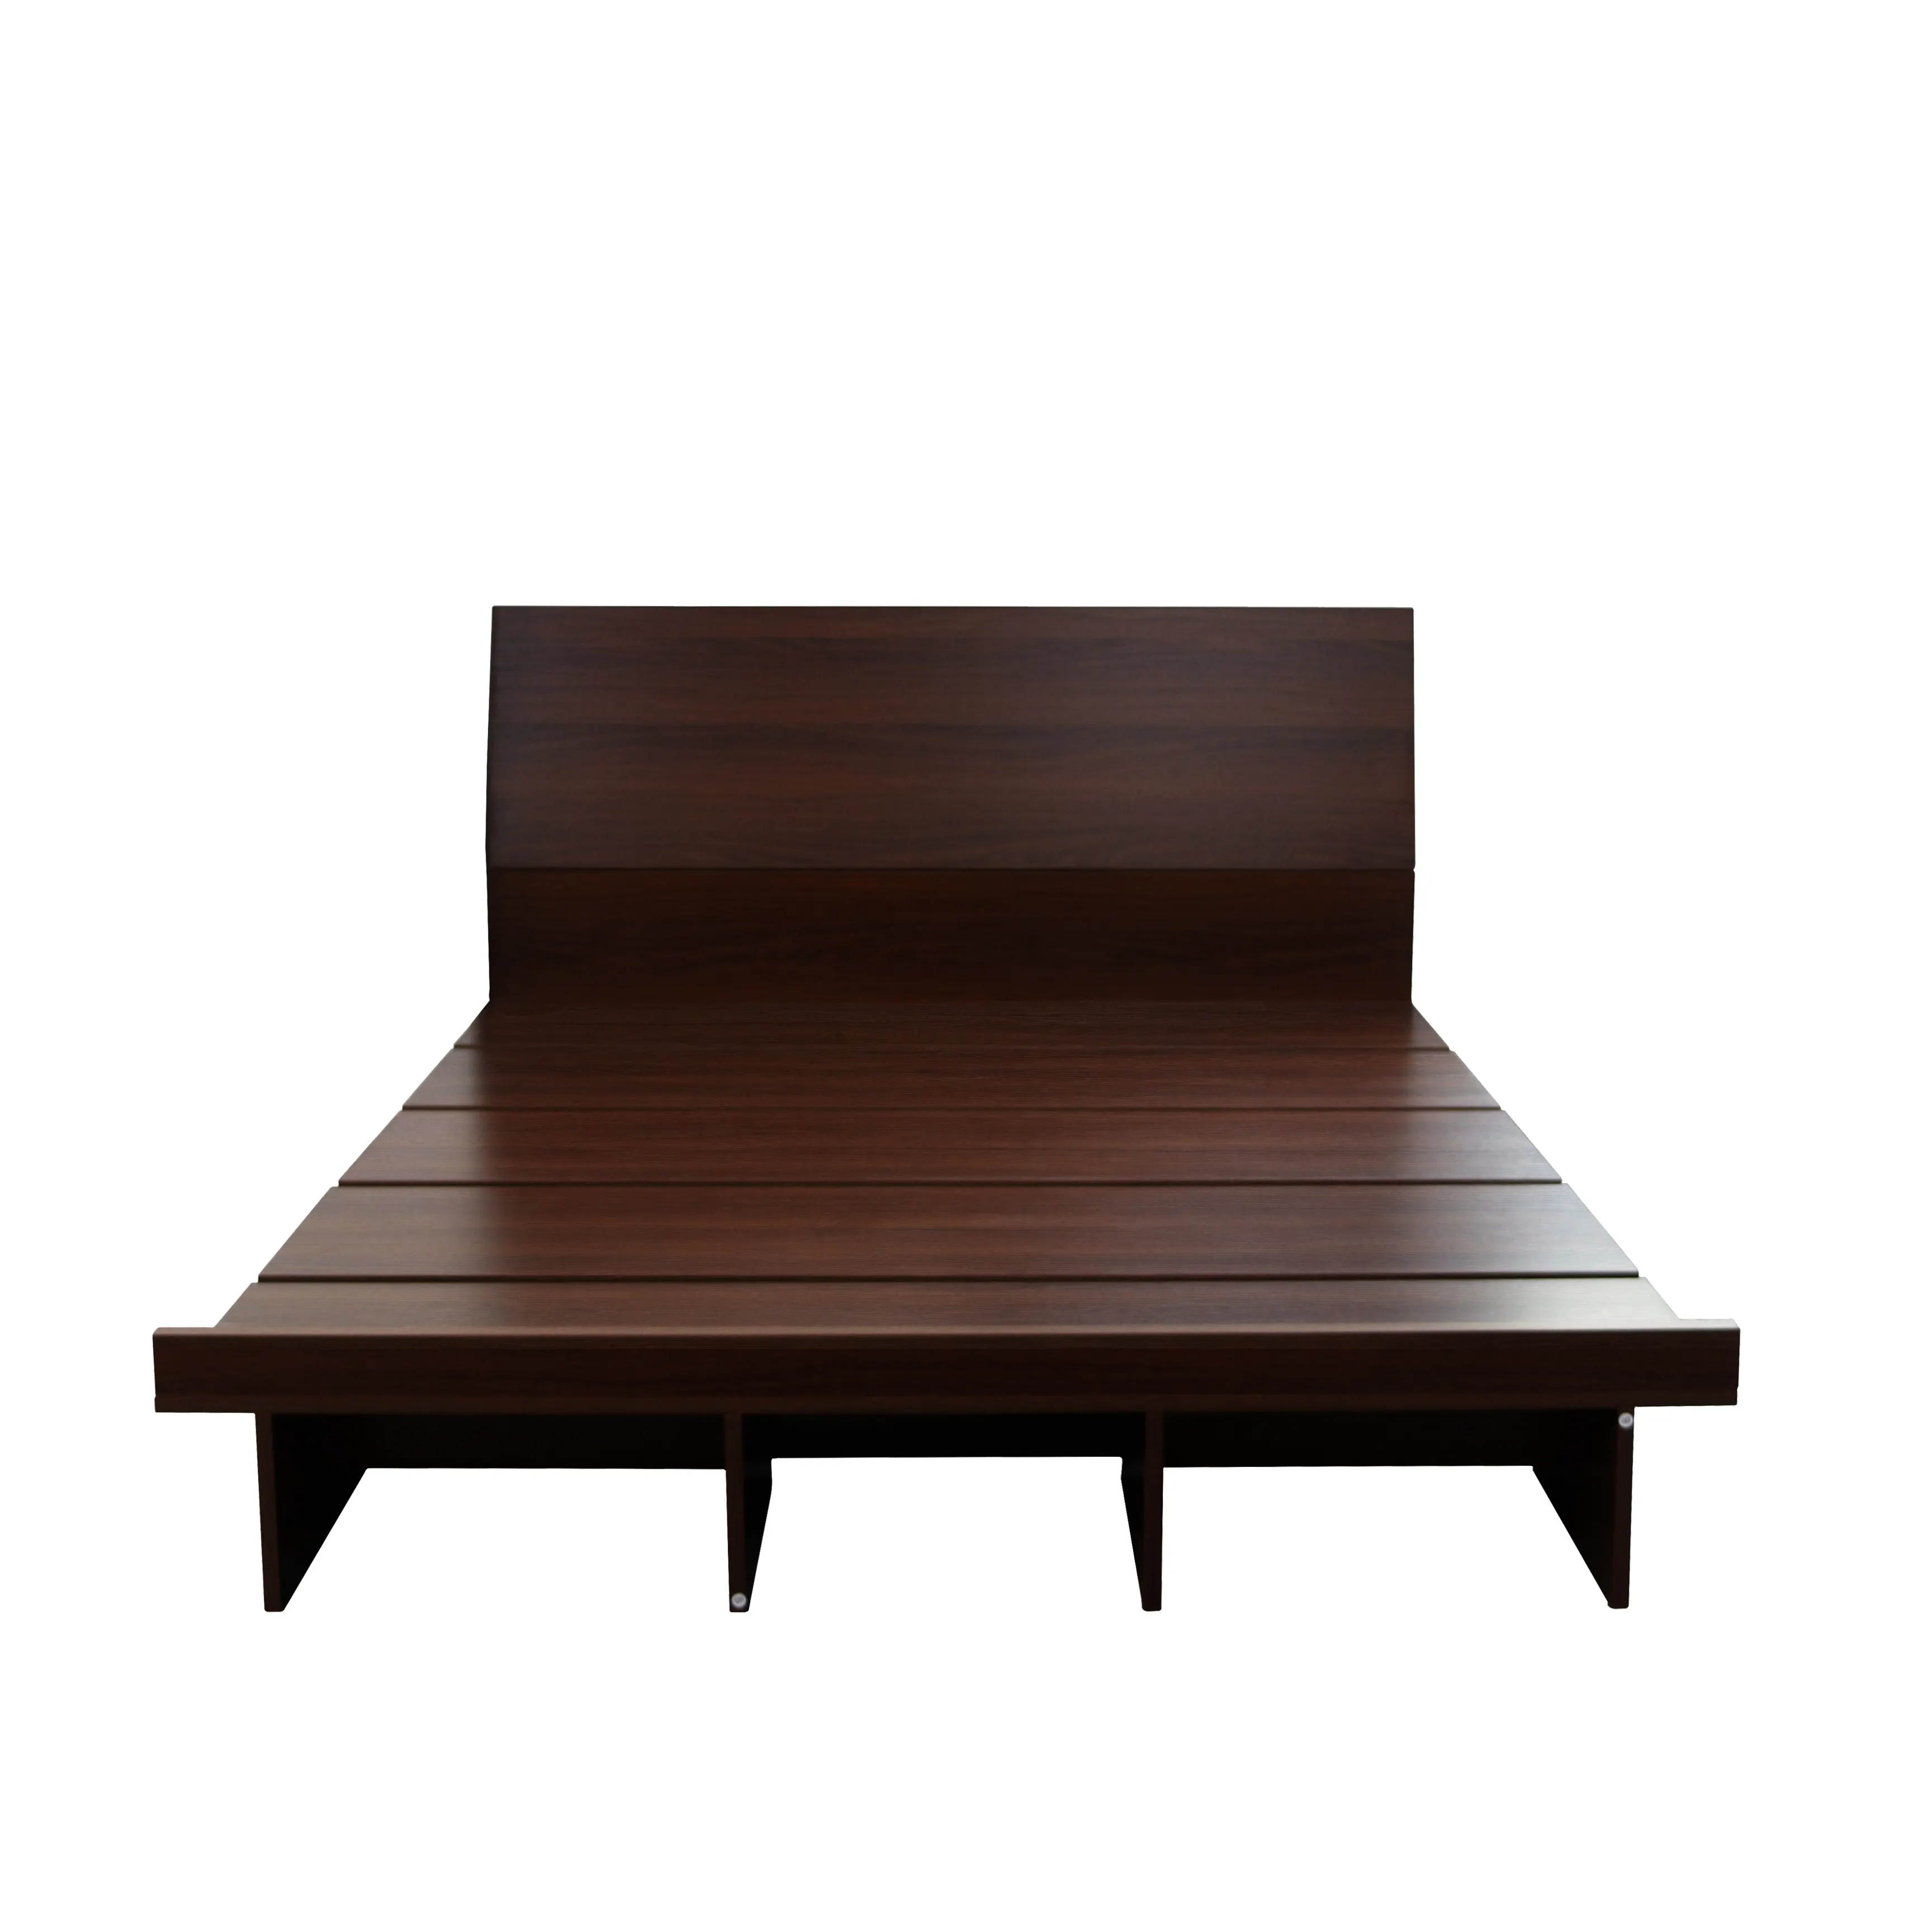 Großhandel Möbel Direkt verkaufs preis Holz Einzel Kingsize-Bett Rahmen Schlafsaal Bett Massivholz Bett Großhandel Möbel